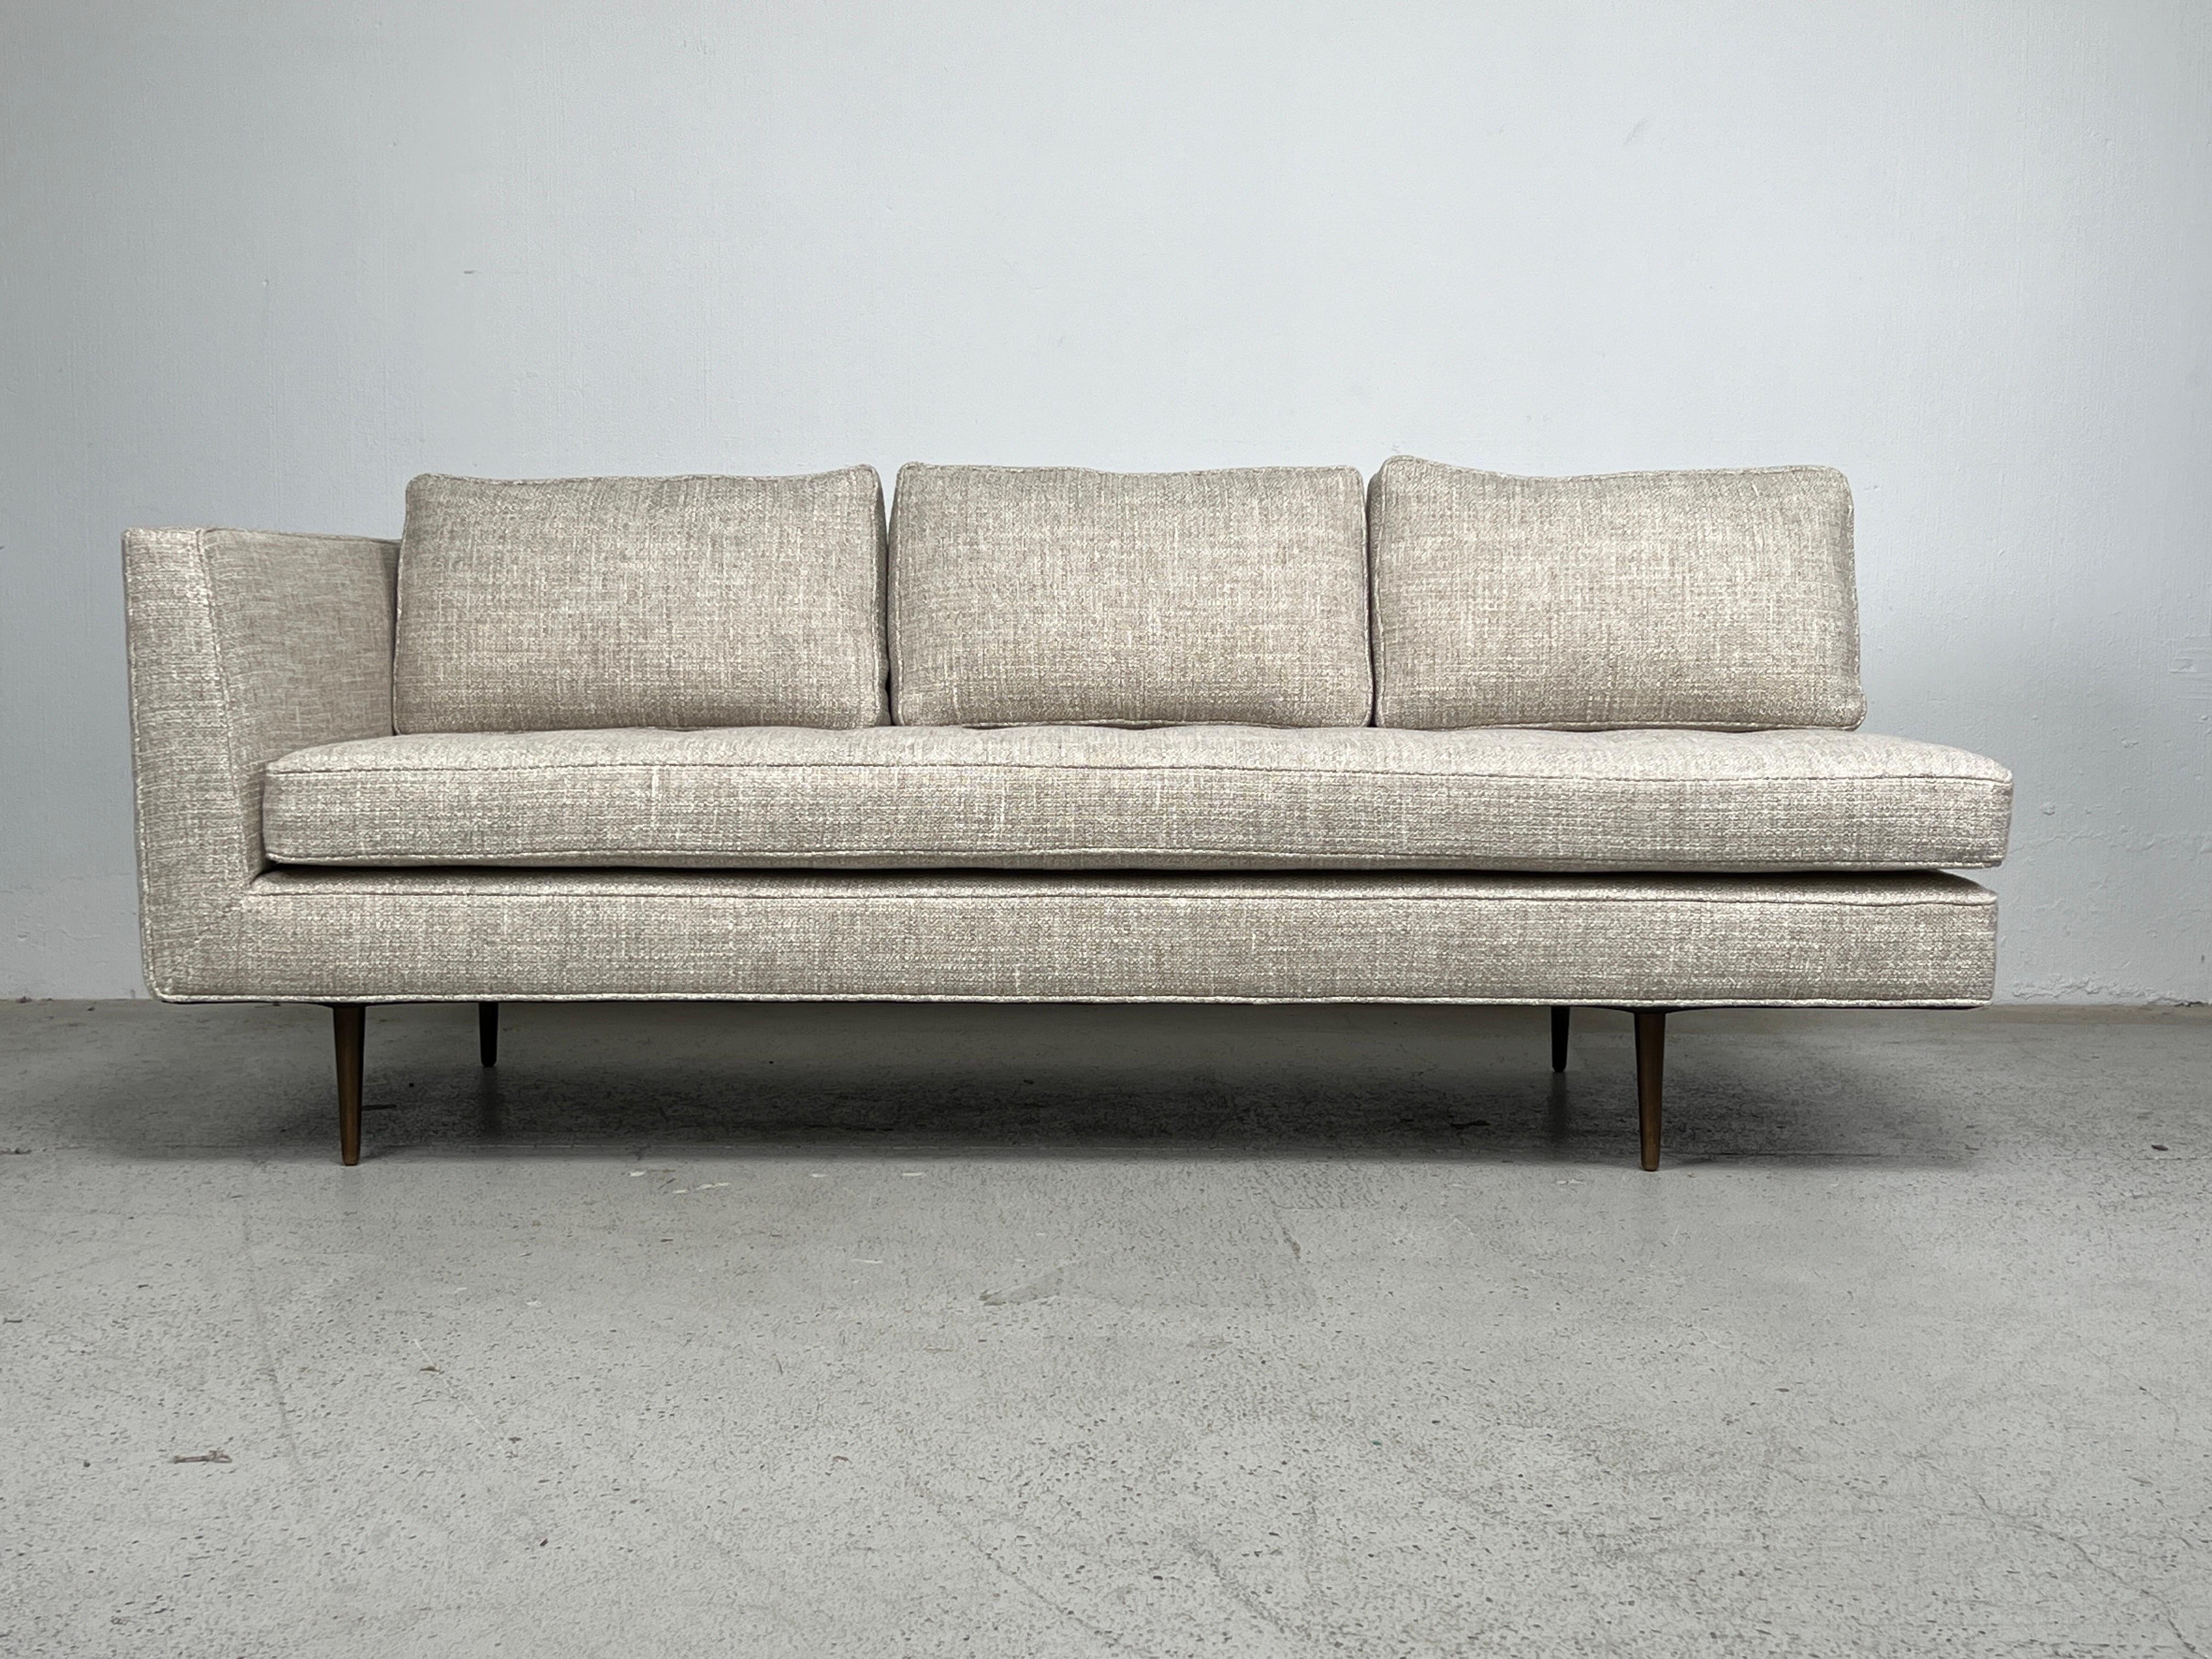 Ein einarmiges Sofa / Daybed mit Messingbeinen. Entworfen von Edward Wormley für Dunbar. Vollständig restauriert. 